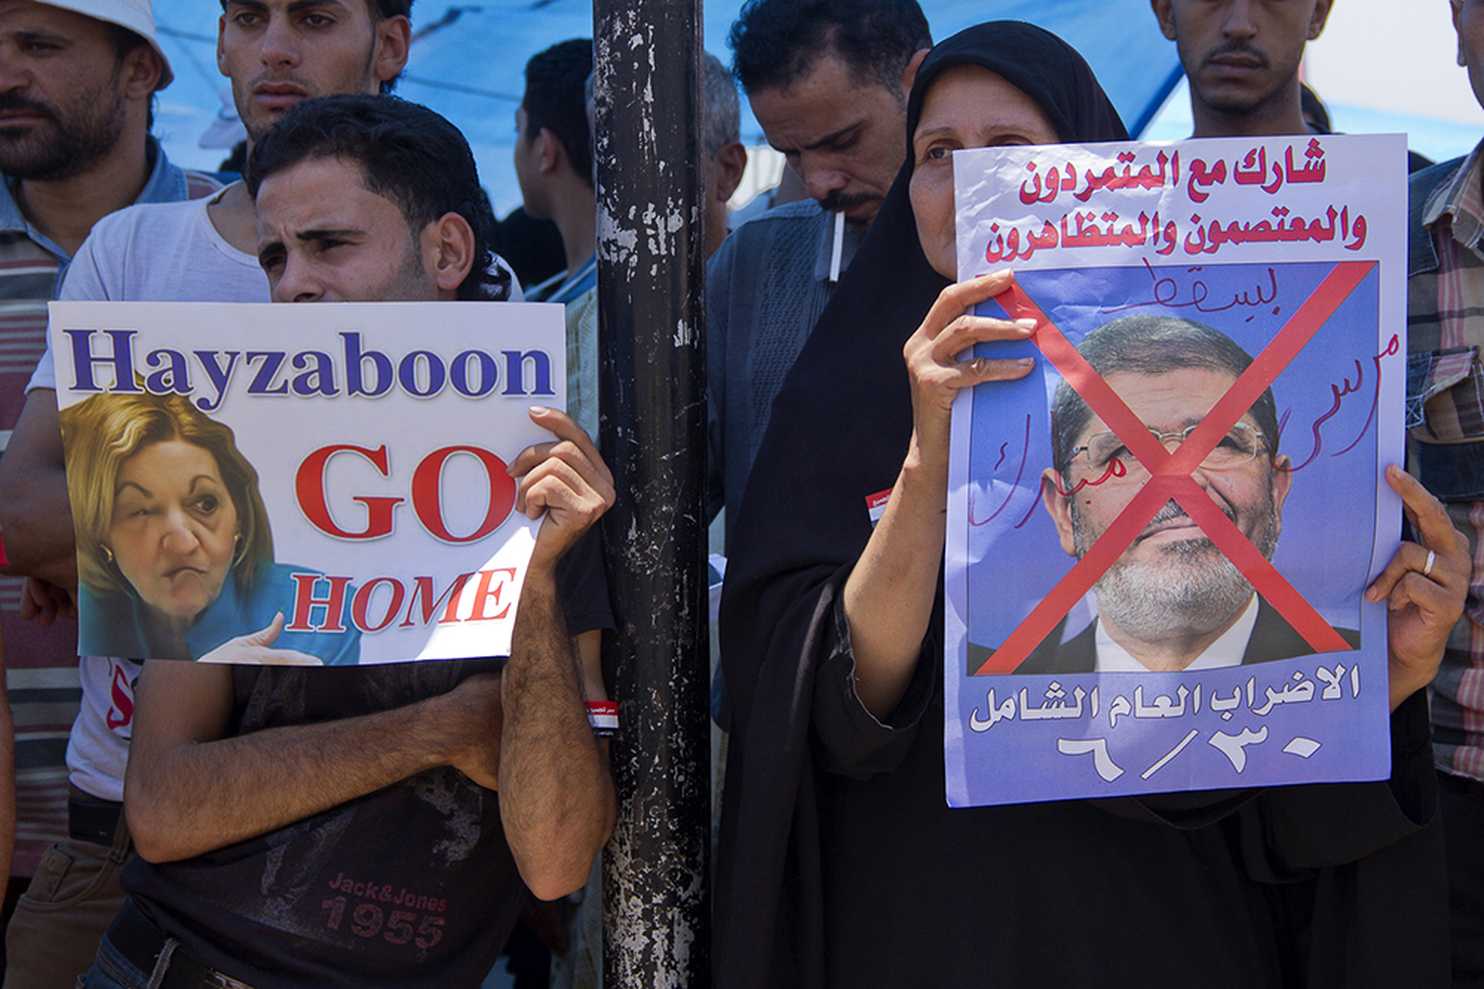 تظاهرات مناهضة لمحمد مرسى وتطالب برحيل آن باترسون